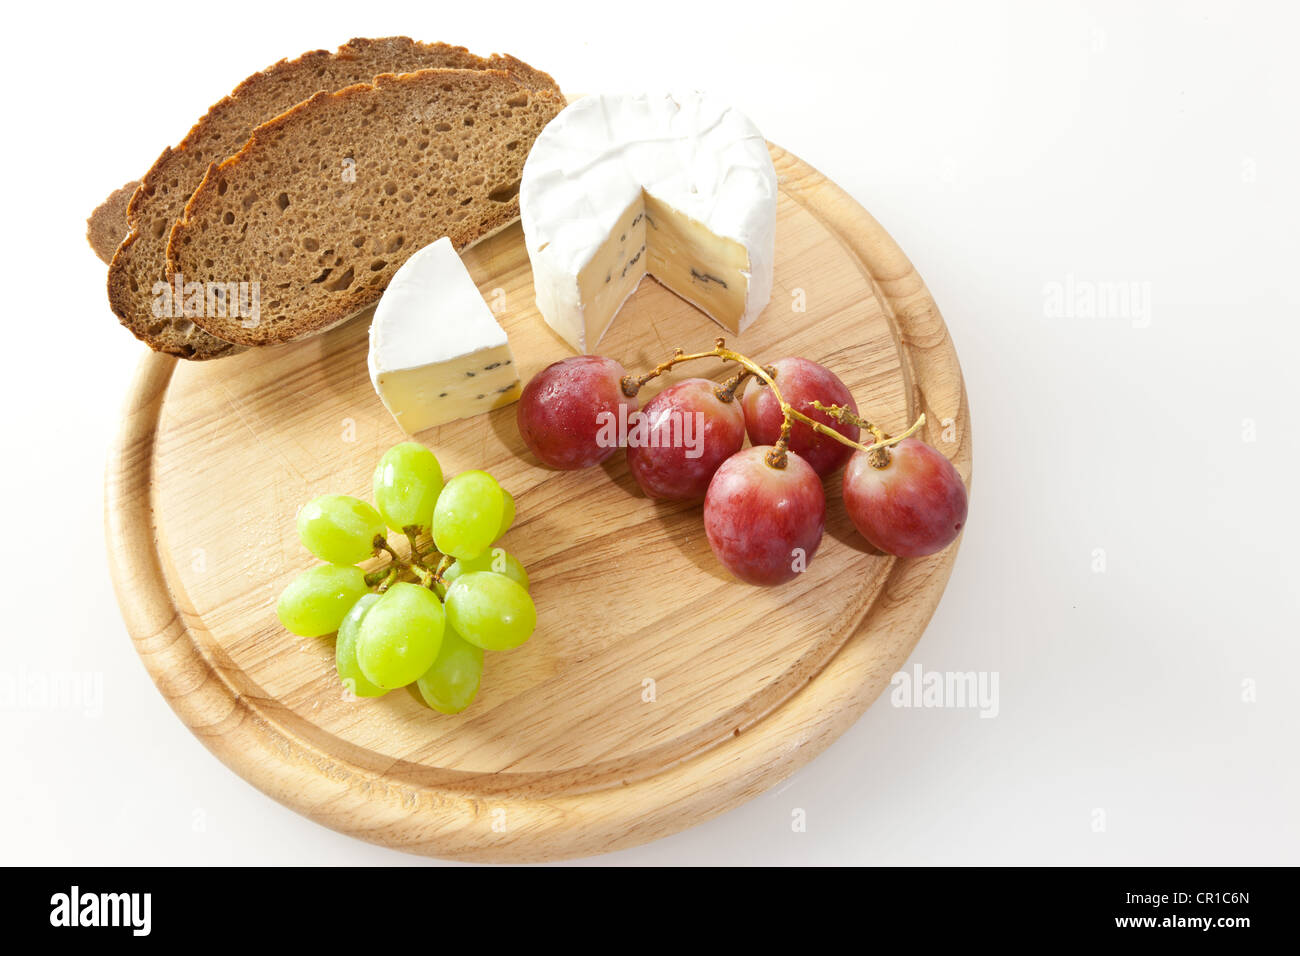 Le fromage bleu sur une planche avec du pain et des raisins Banque D'Images